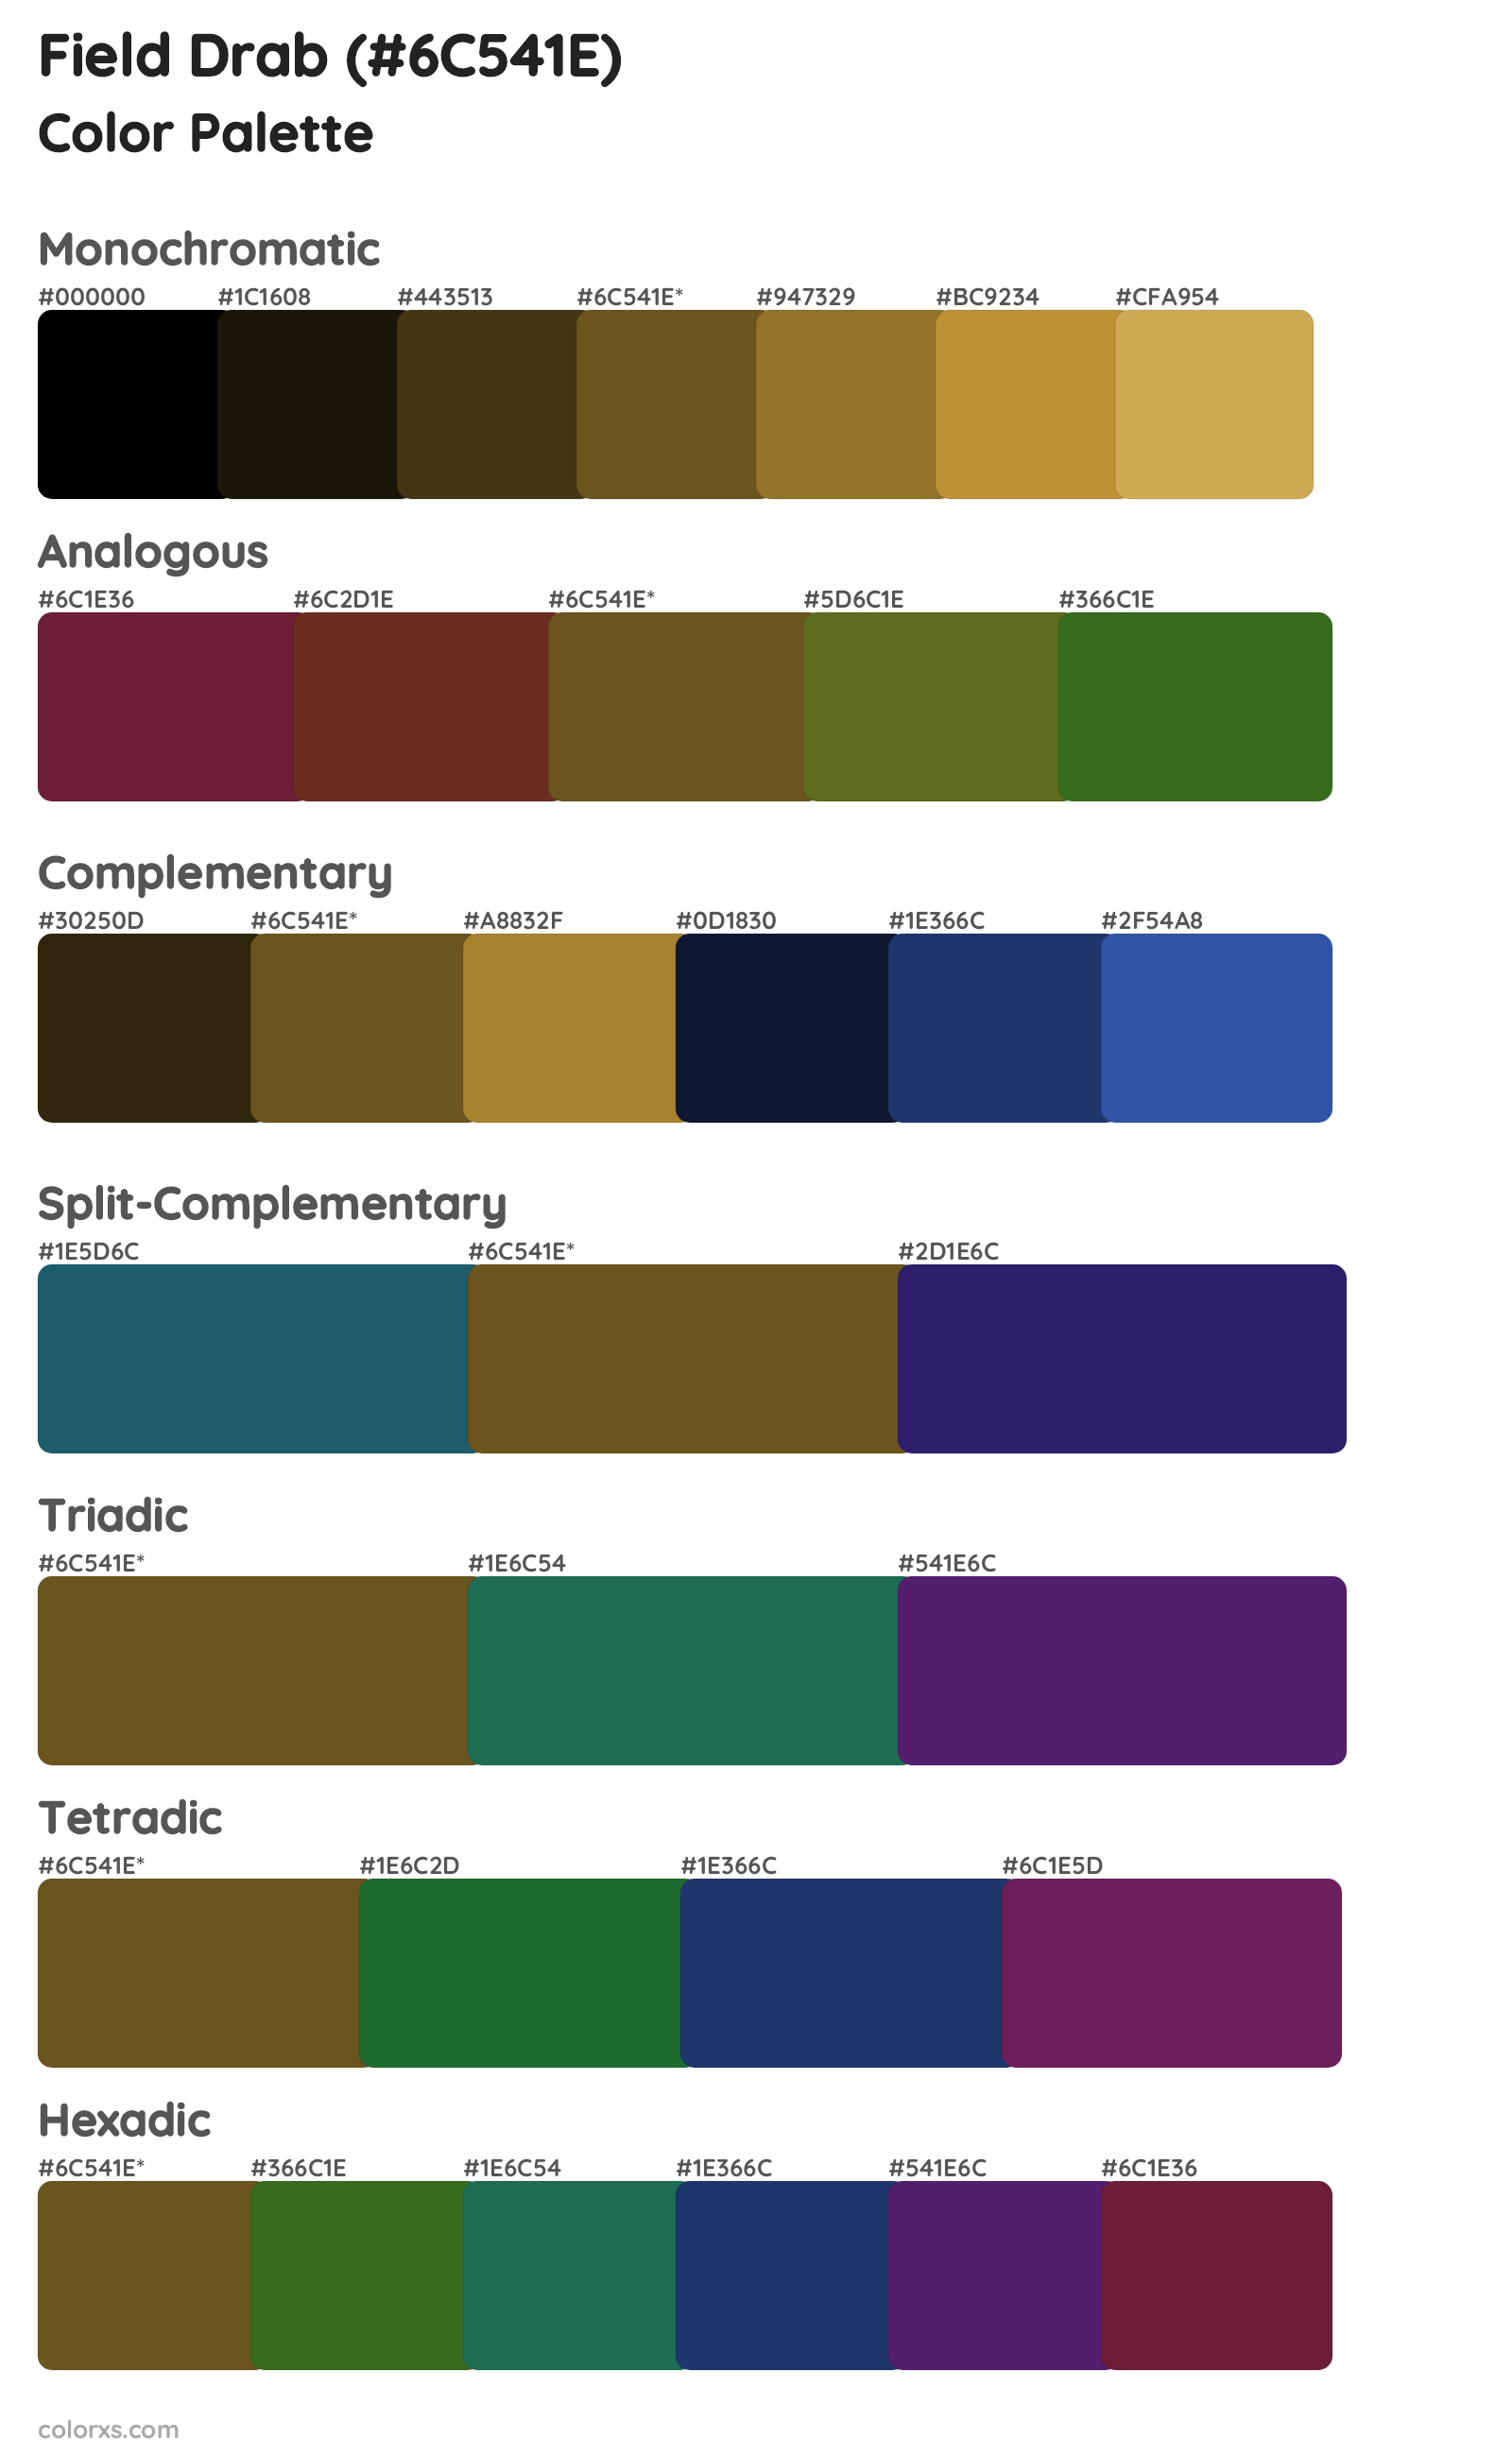 Field Drab Color Scheme Palettes